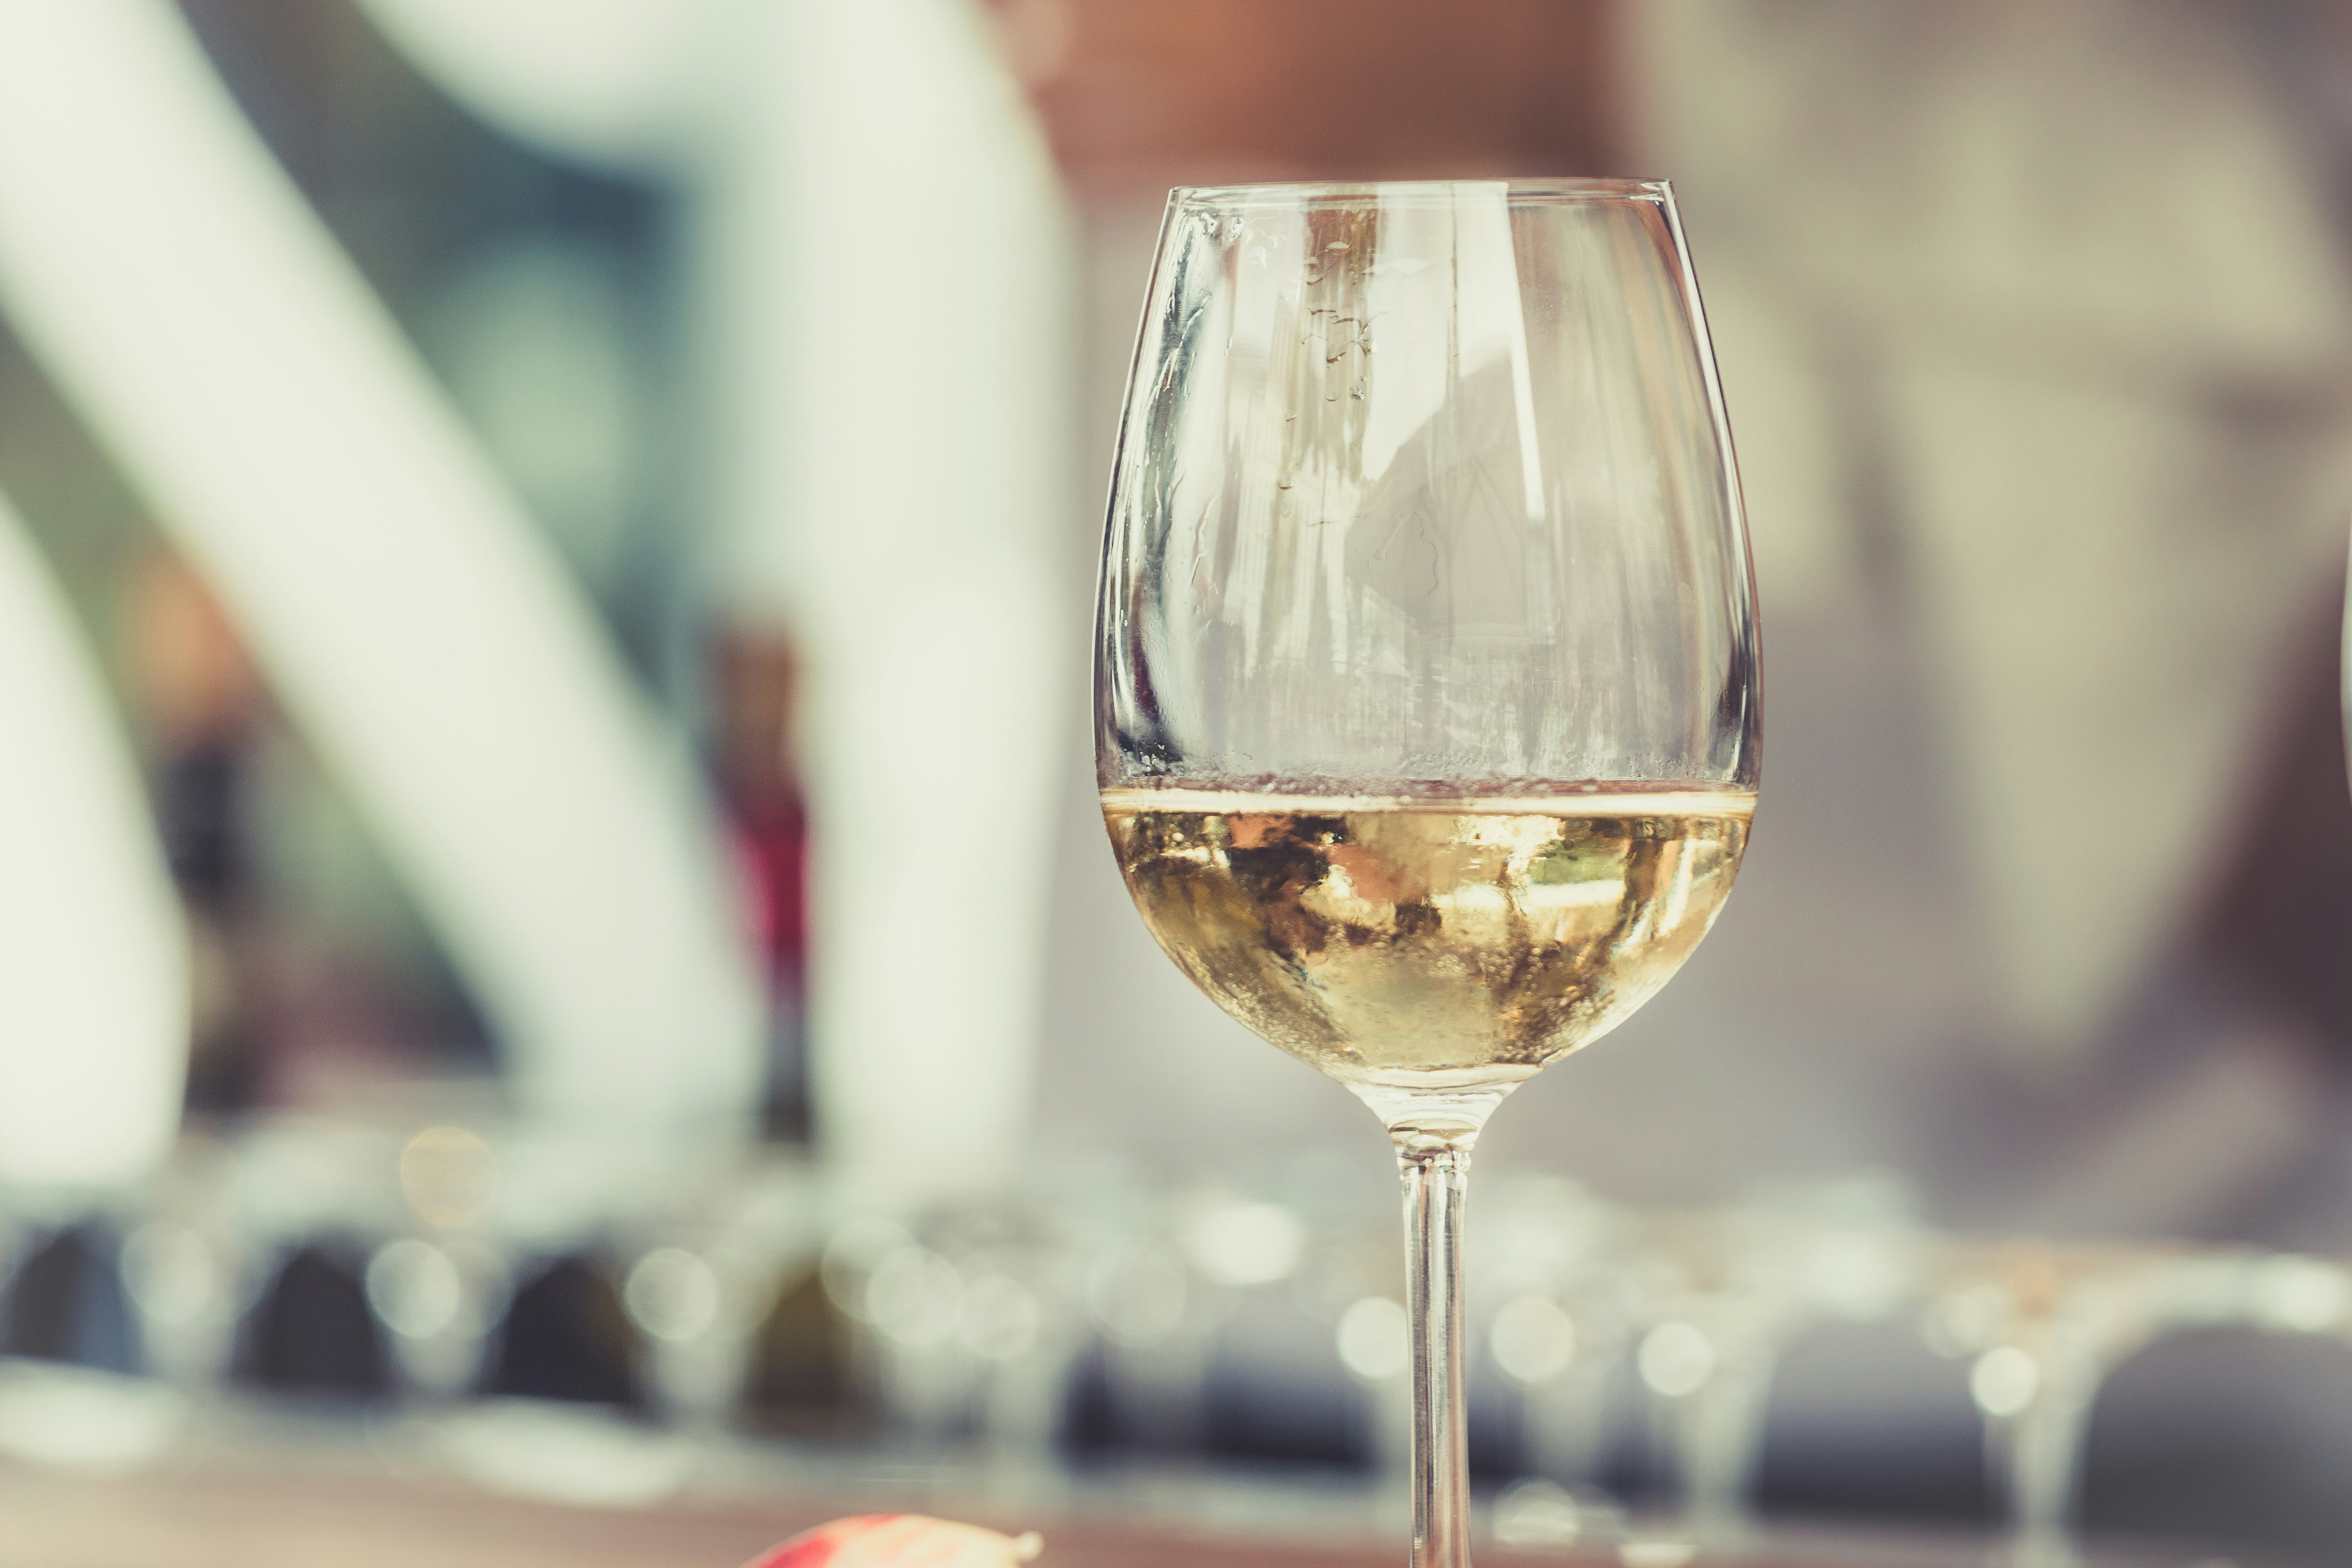 découvrez une délicieuse sélection de vins blancs pour accompagner vos repas et vos moments détente. trouvez le parfait équilibre entre fraîcheur et arômes dans notre collection de vins blancs.